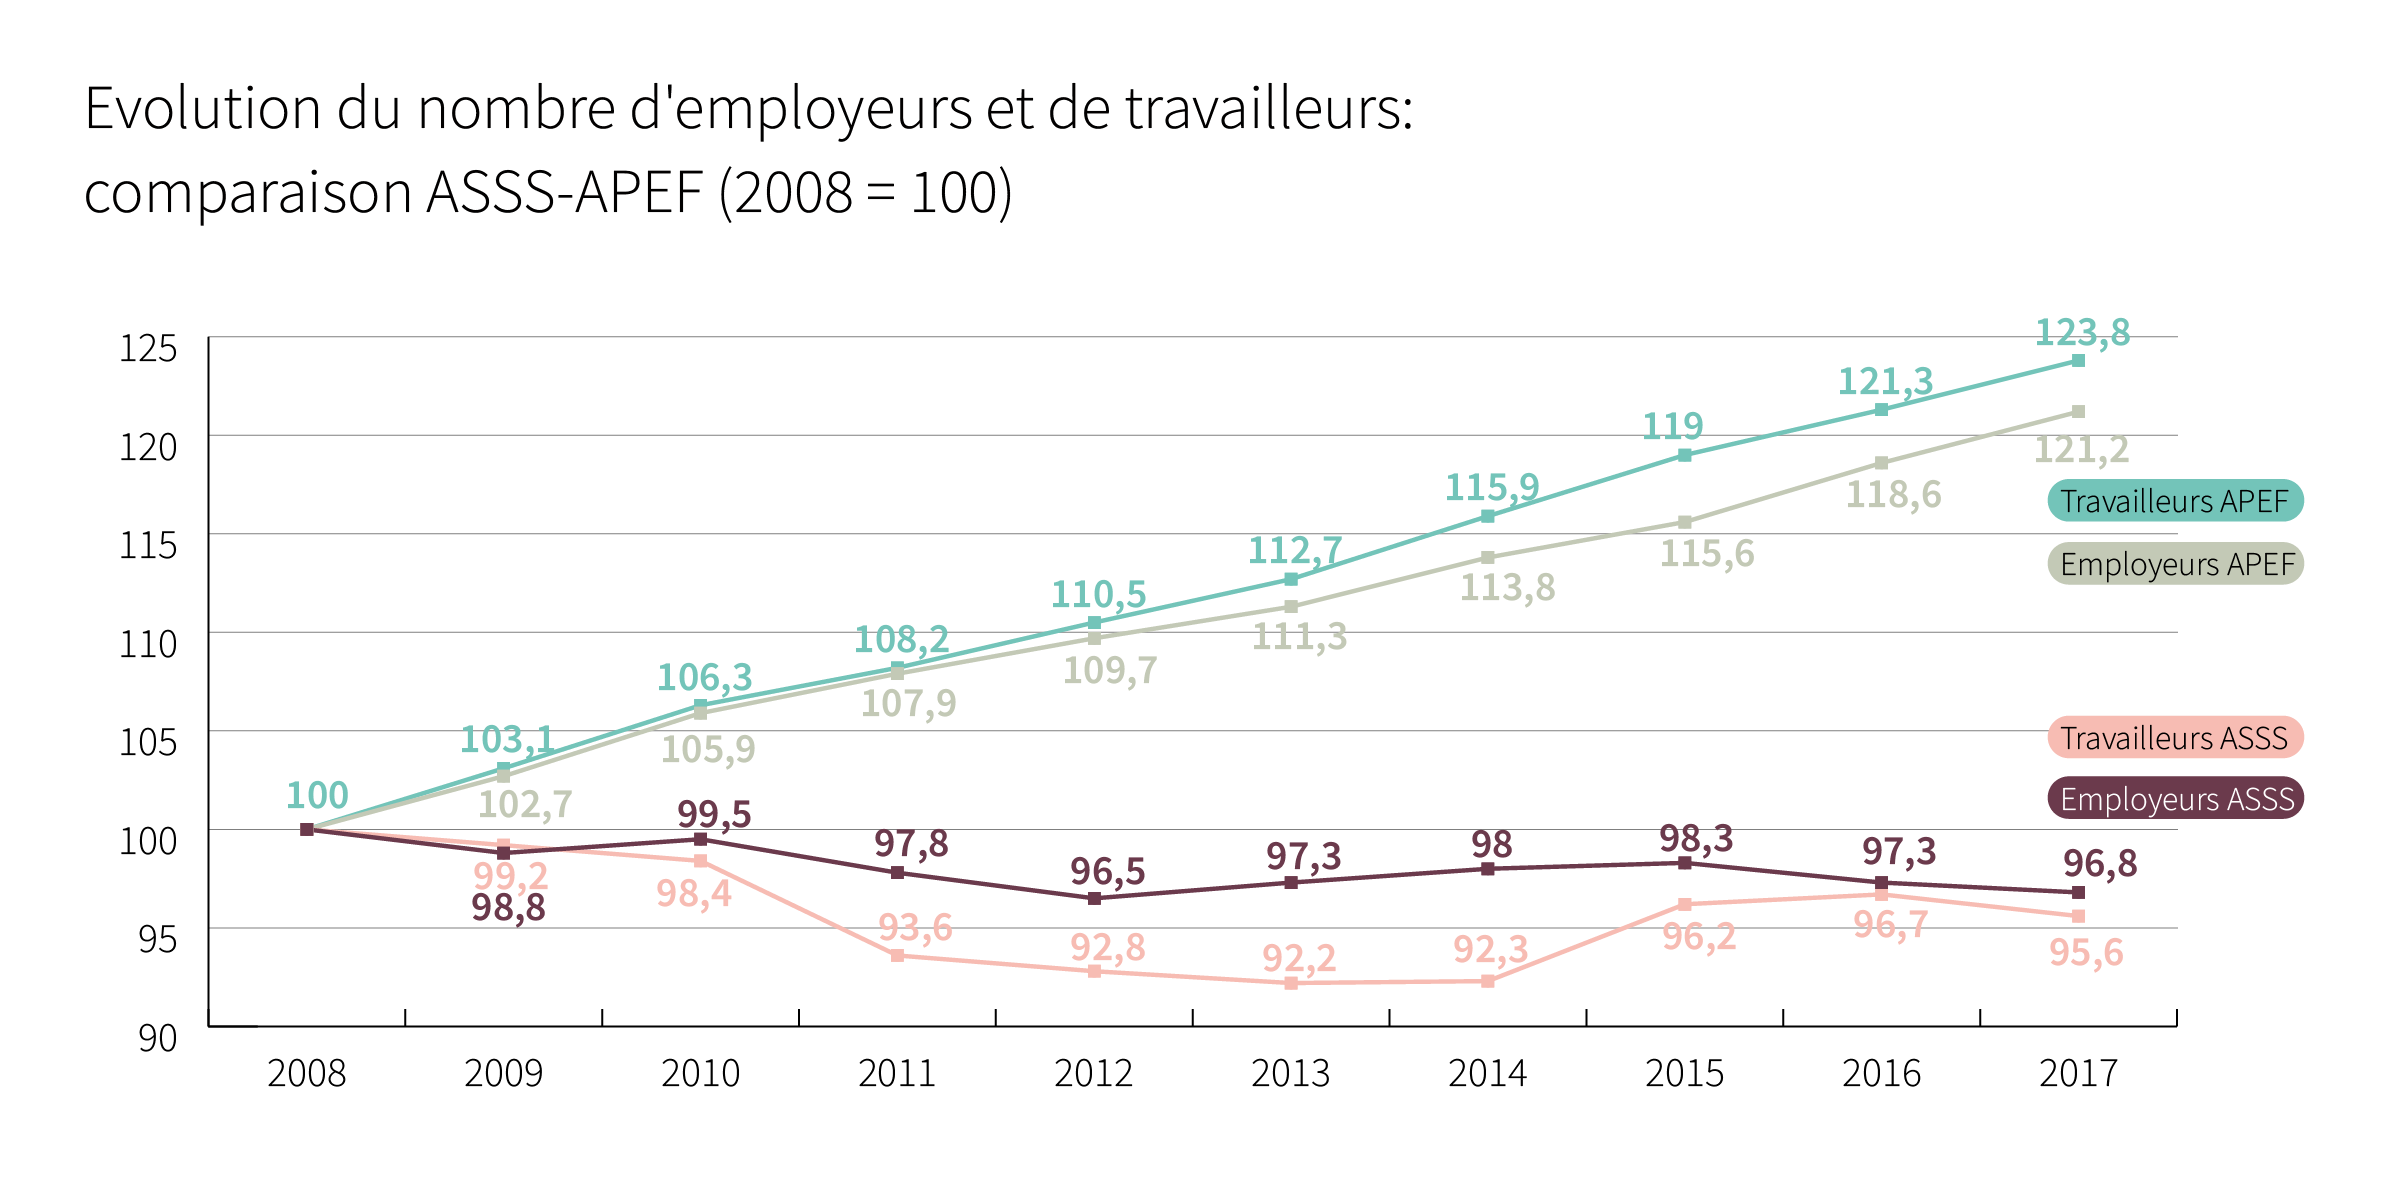 Evolution du nombre d’employeurs et de travailleurs: comparaison ASSS-APEF (2008 = 100) - Cliquez pour agrandir